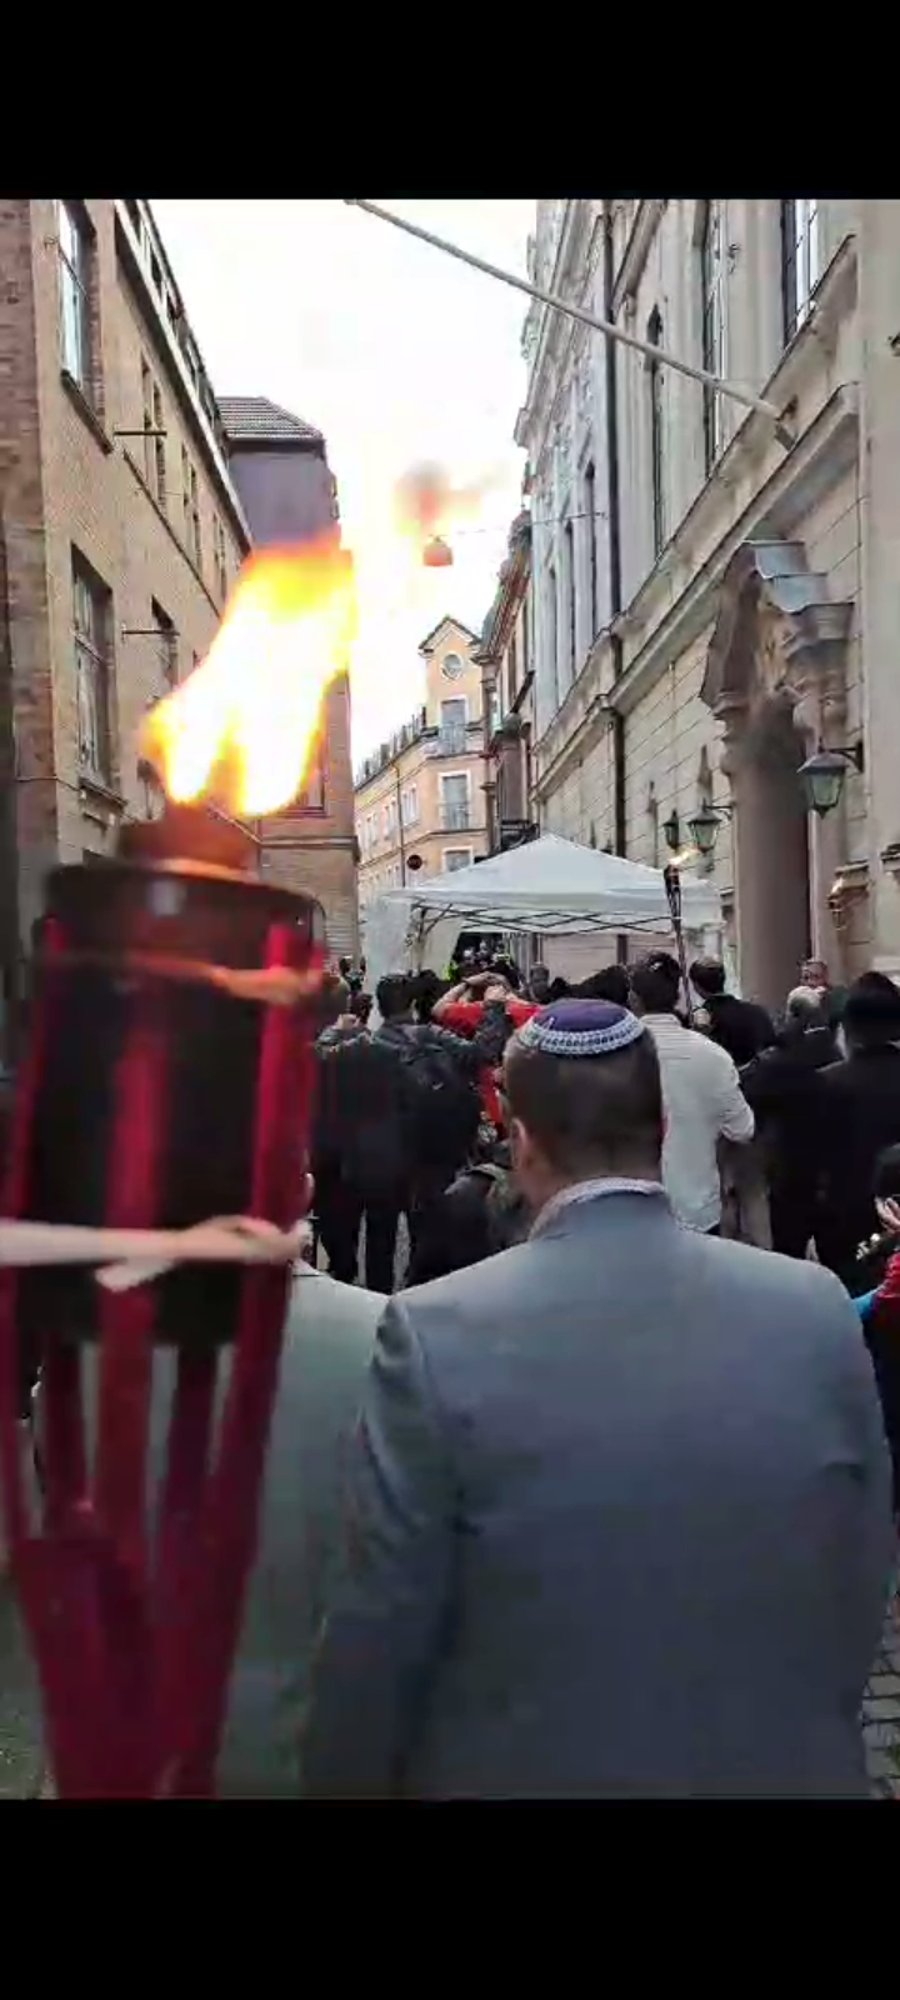 שבועיים אחרי איום שריפת התנ"ך בשבדיה: אירוע נדיר של הכנסת ס"ת ברחובות המדינה 